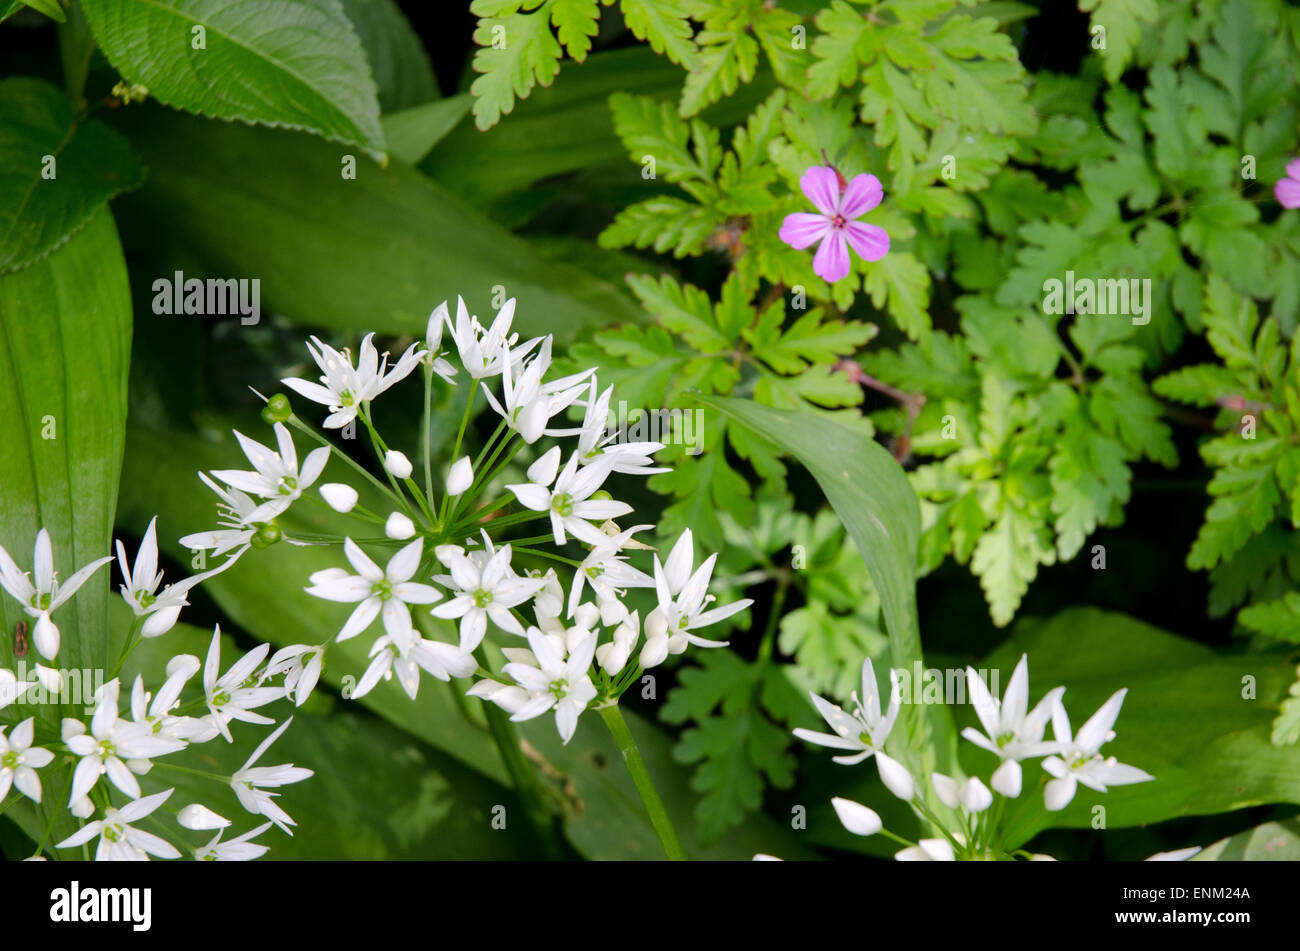 Wild Garlic Allium ursinum and geranium robertianum Stock Photo